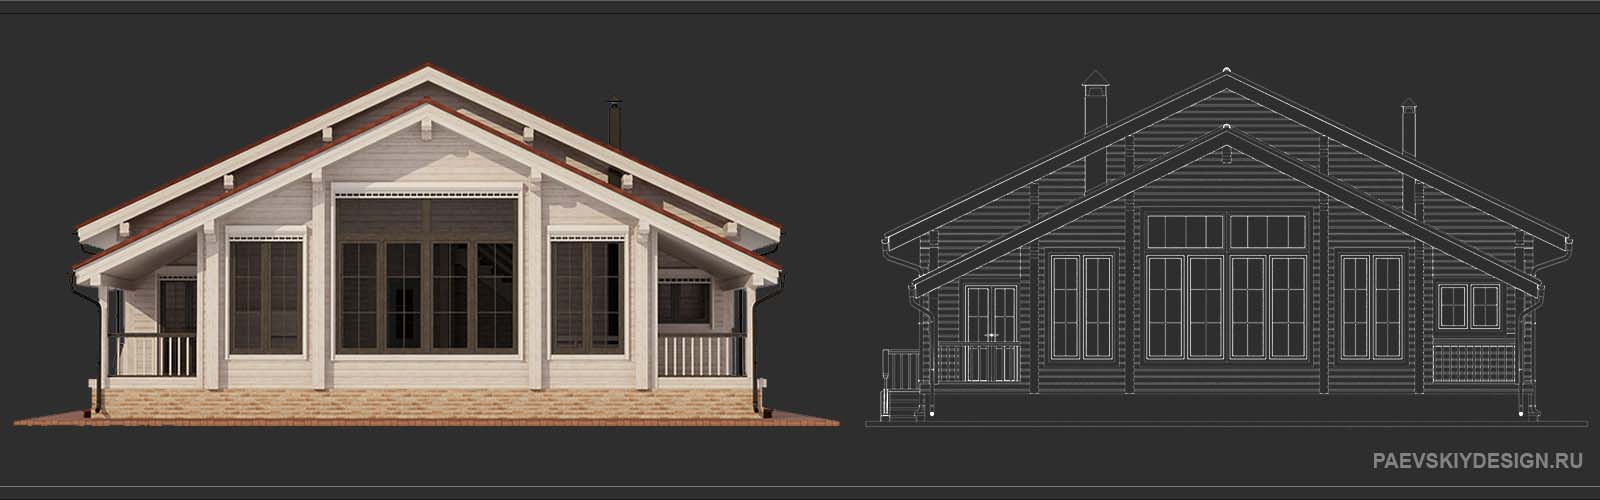 Цветовое решение для деревянного дома из профилированного бруса